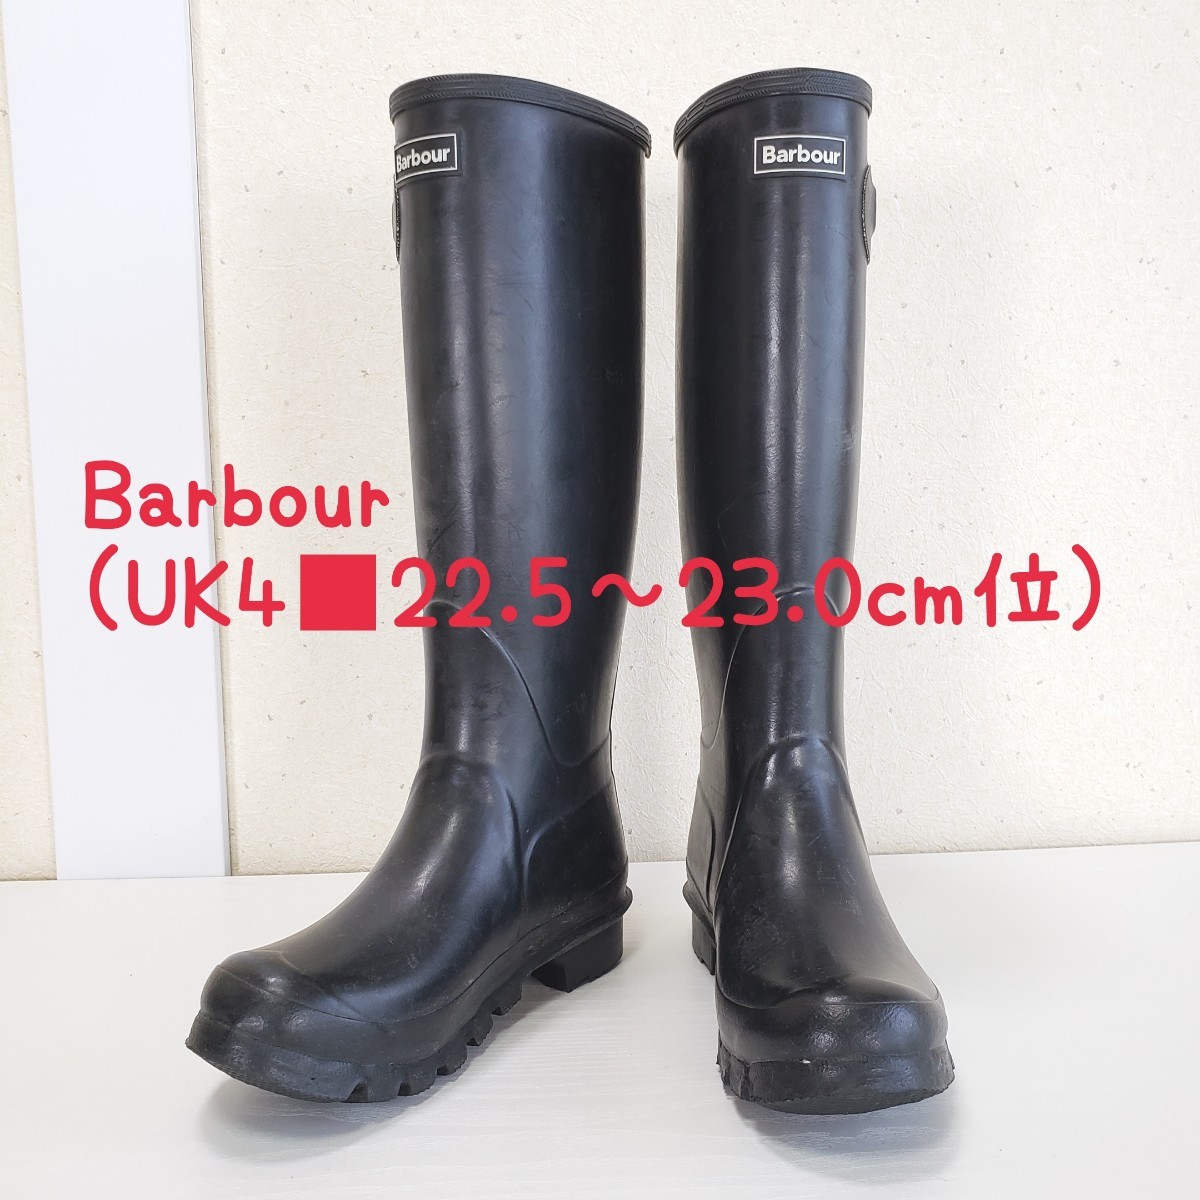 極上品◆Barbour バブアー レインブーツ 長靴 レディース(UK4■22.5～23.0cm位)ブラック/黒